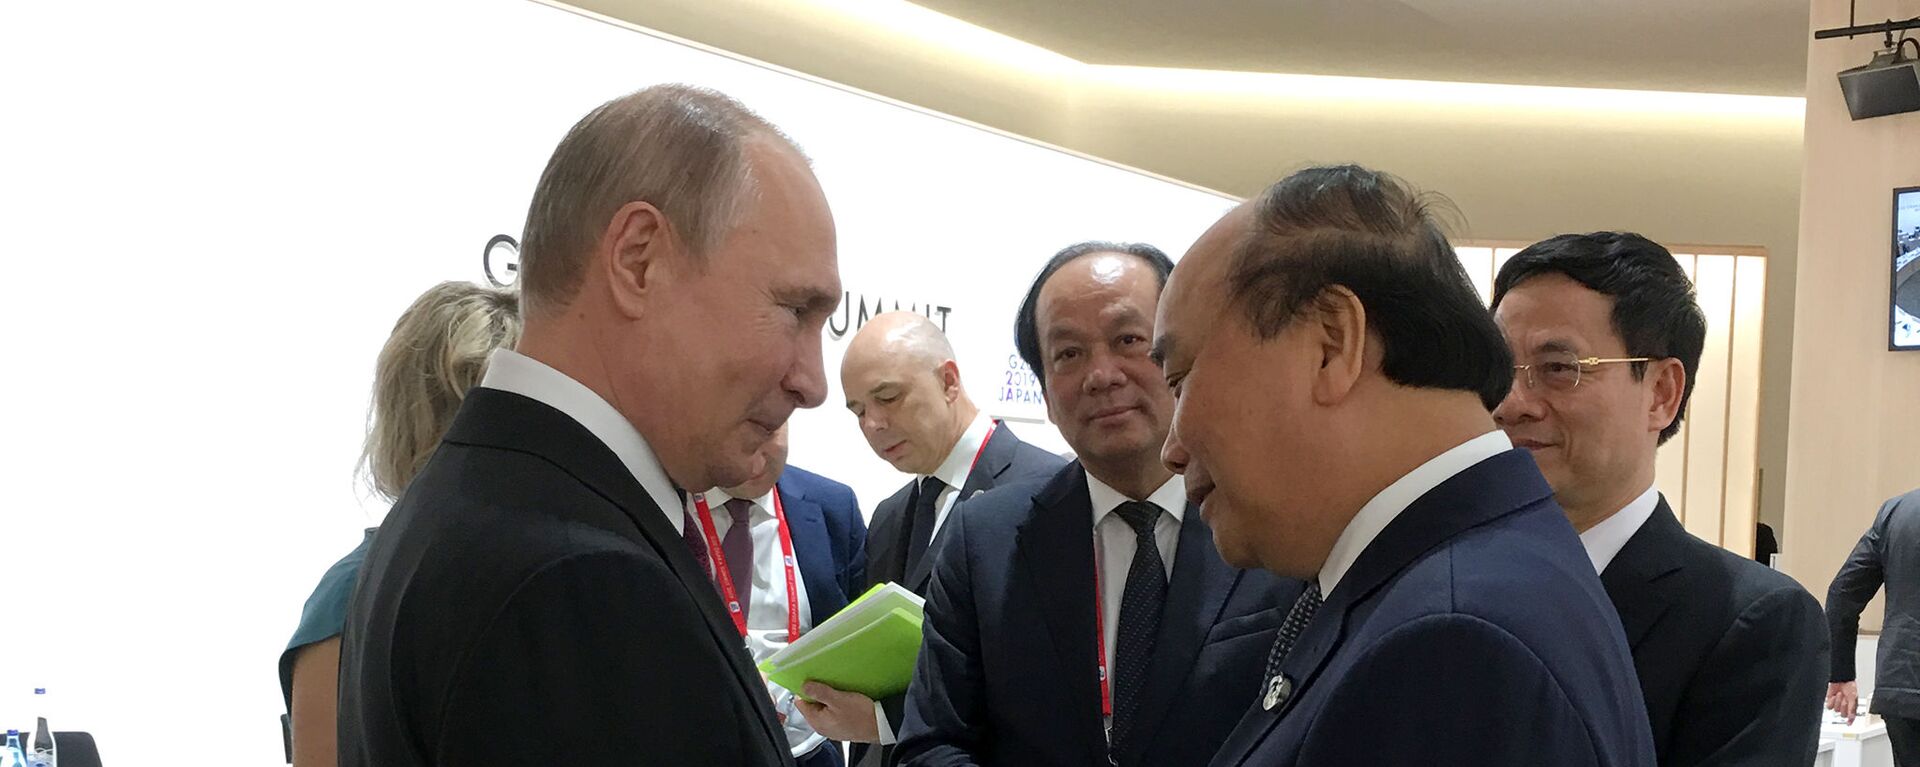 Thủ tướng Nguyễn Xuân Phúc gặp Tổng thống Nga Putin bên lề hội nghị G20.  - Sputnik Việt Nam, 1920, 02.07.2019